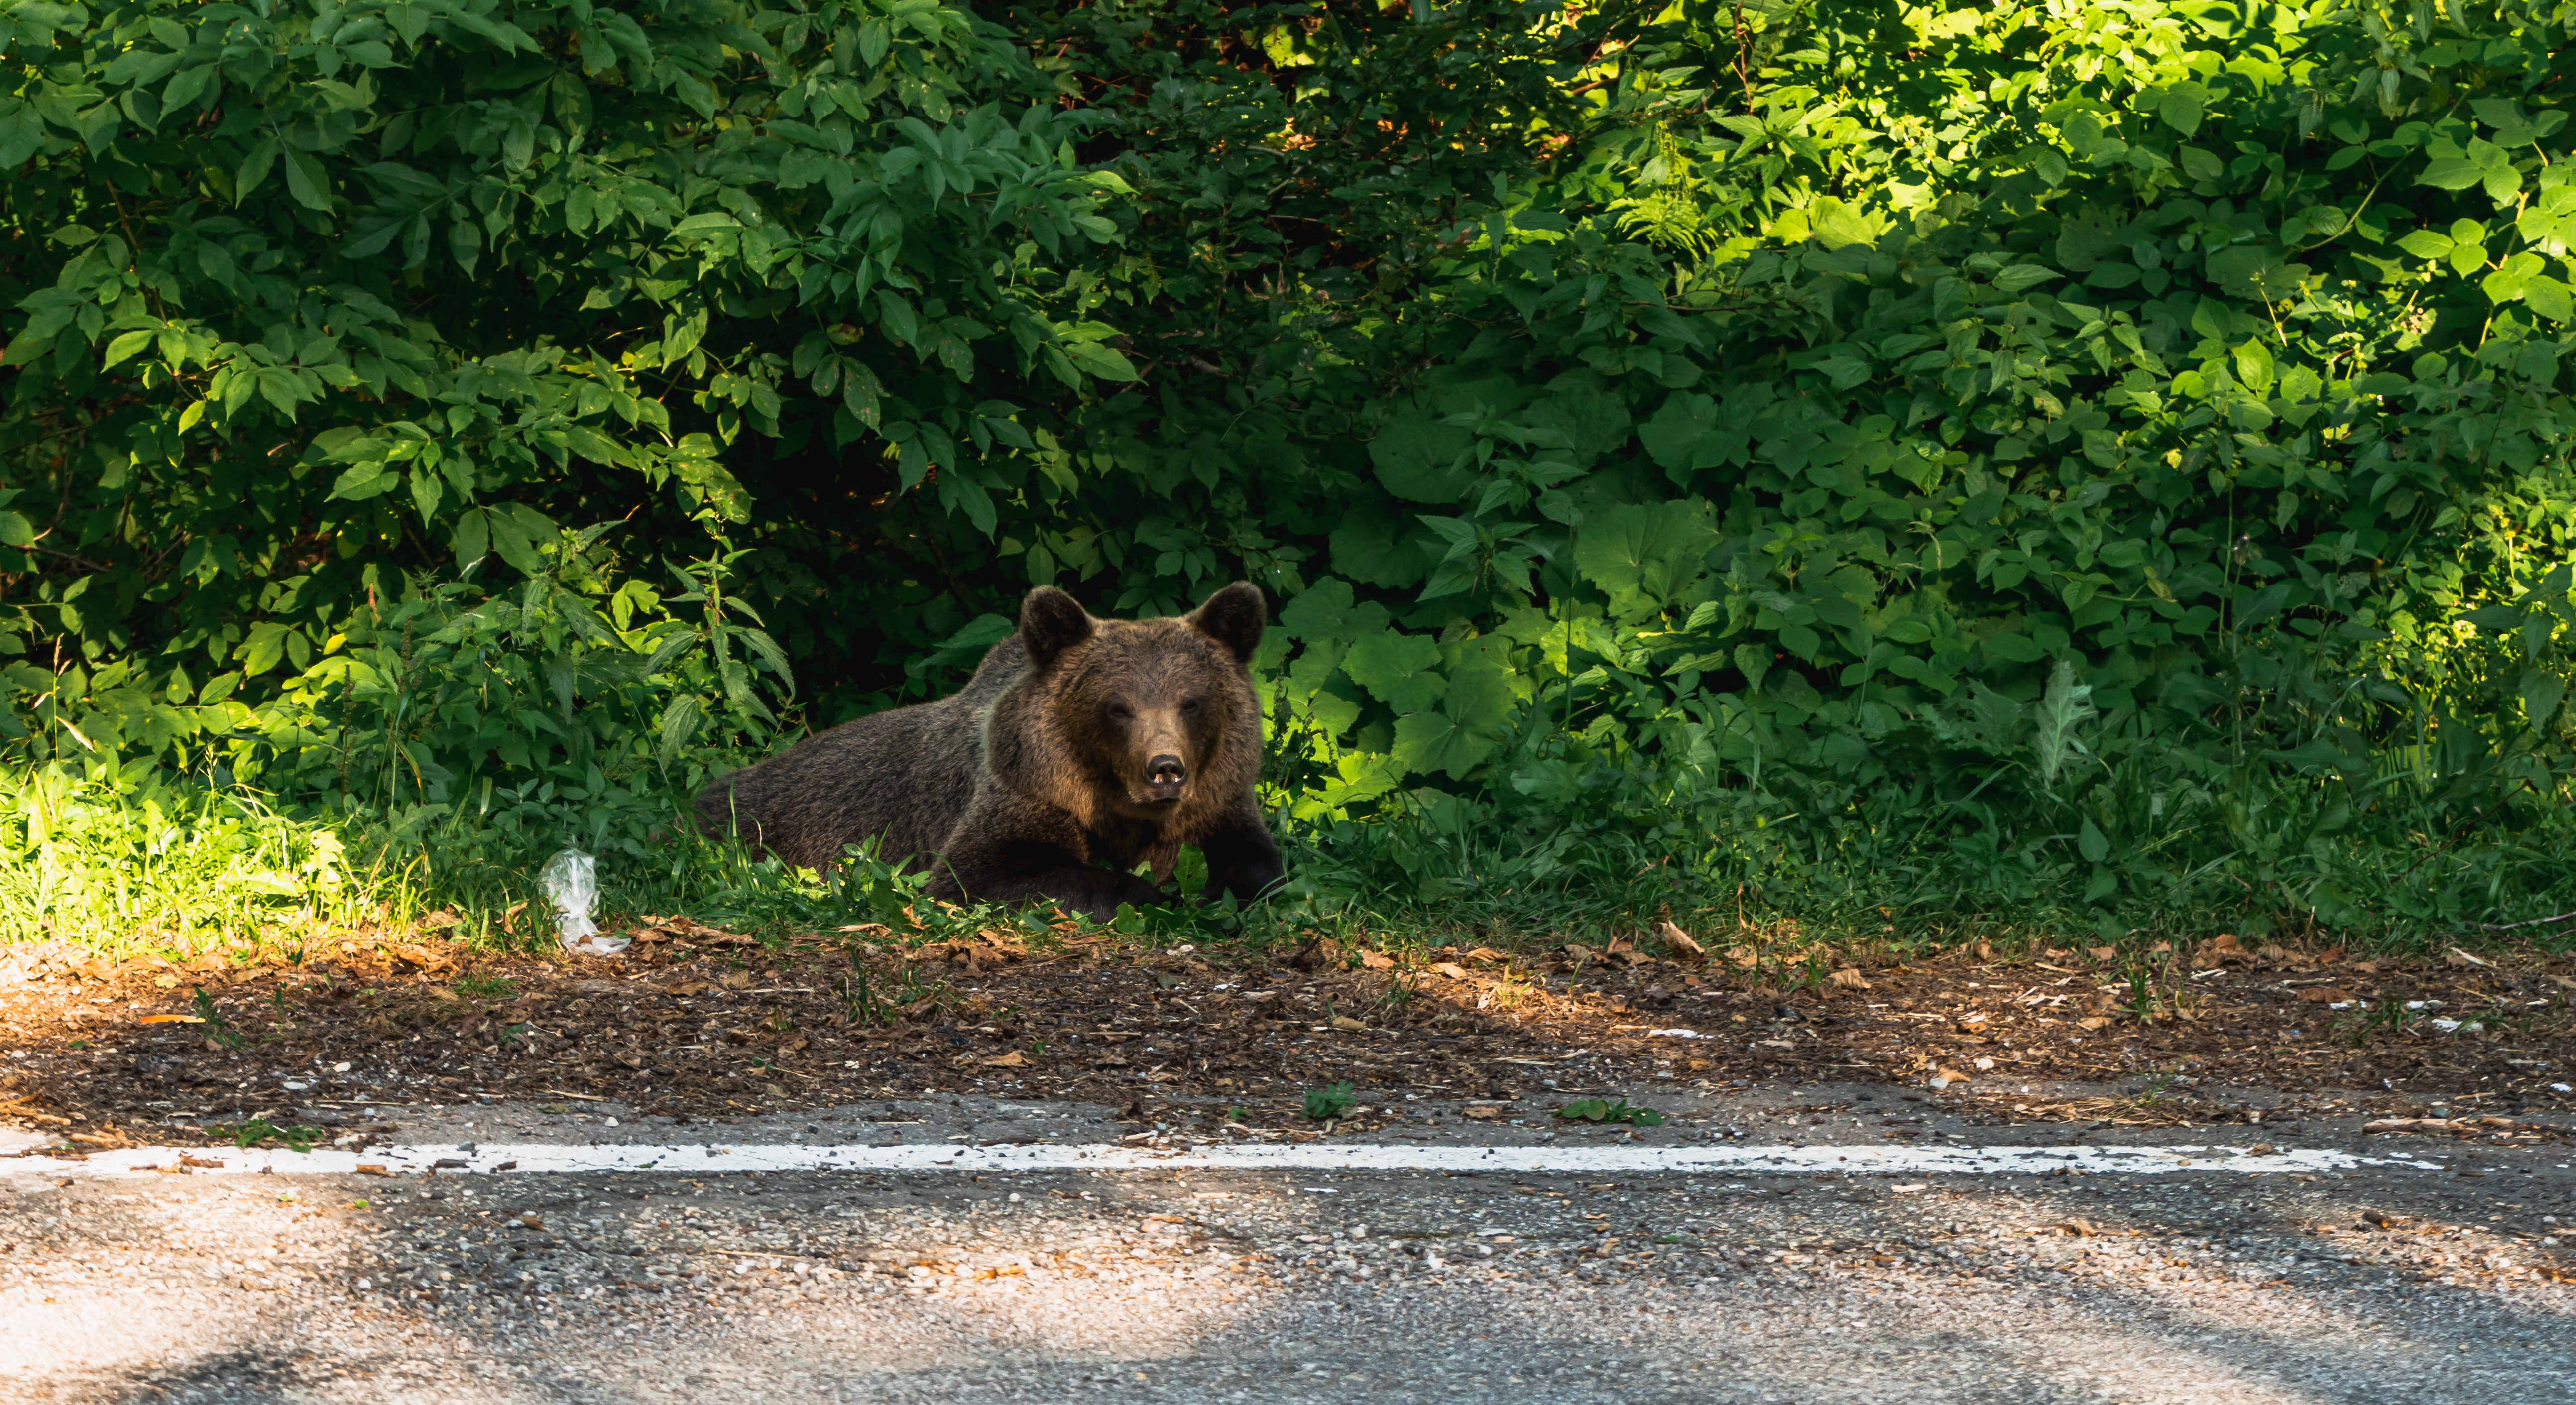 Turistă amendată pentru că îi dădea de mâncare unui urs, pe Transfăgărășan